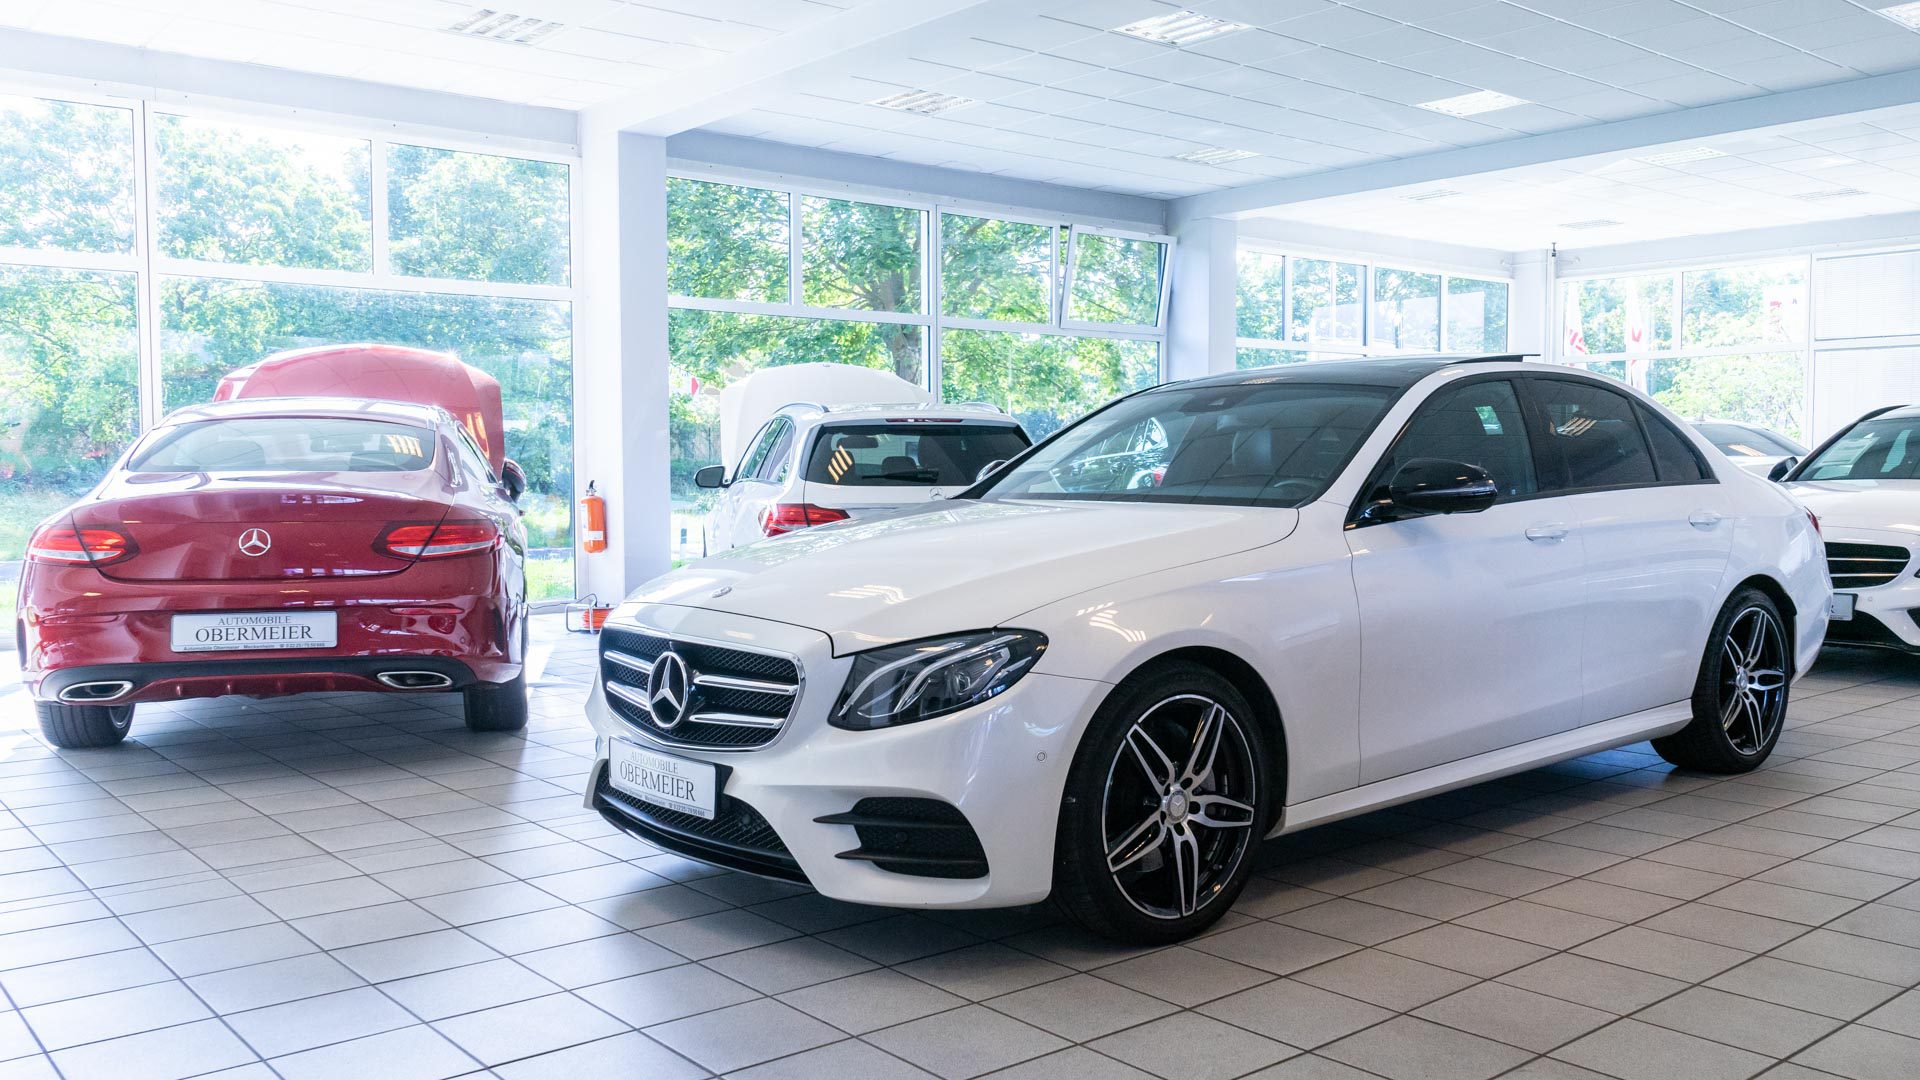 Rotes und weißes Fahrzeug von Mercedes Benz in Ausstellungshalle